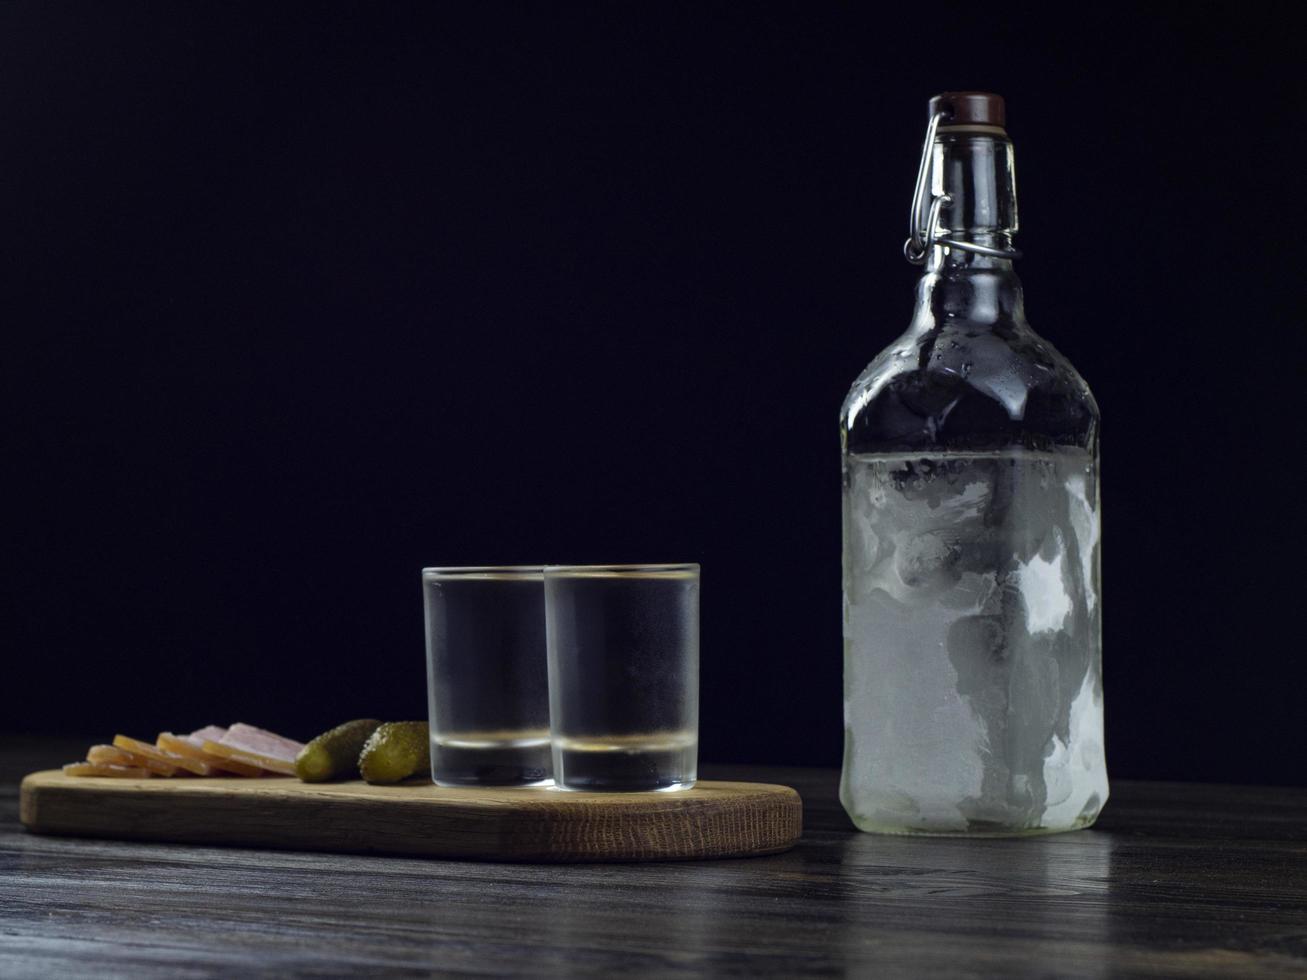 Flasche Wodka, zwei beschlagene Gläser mit kaltem Wodka auf einem Holzbrett foto